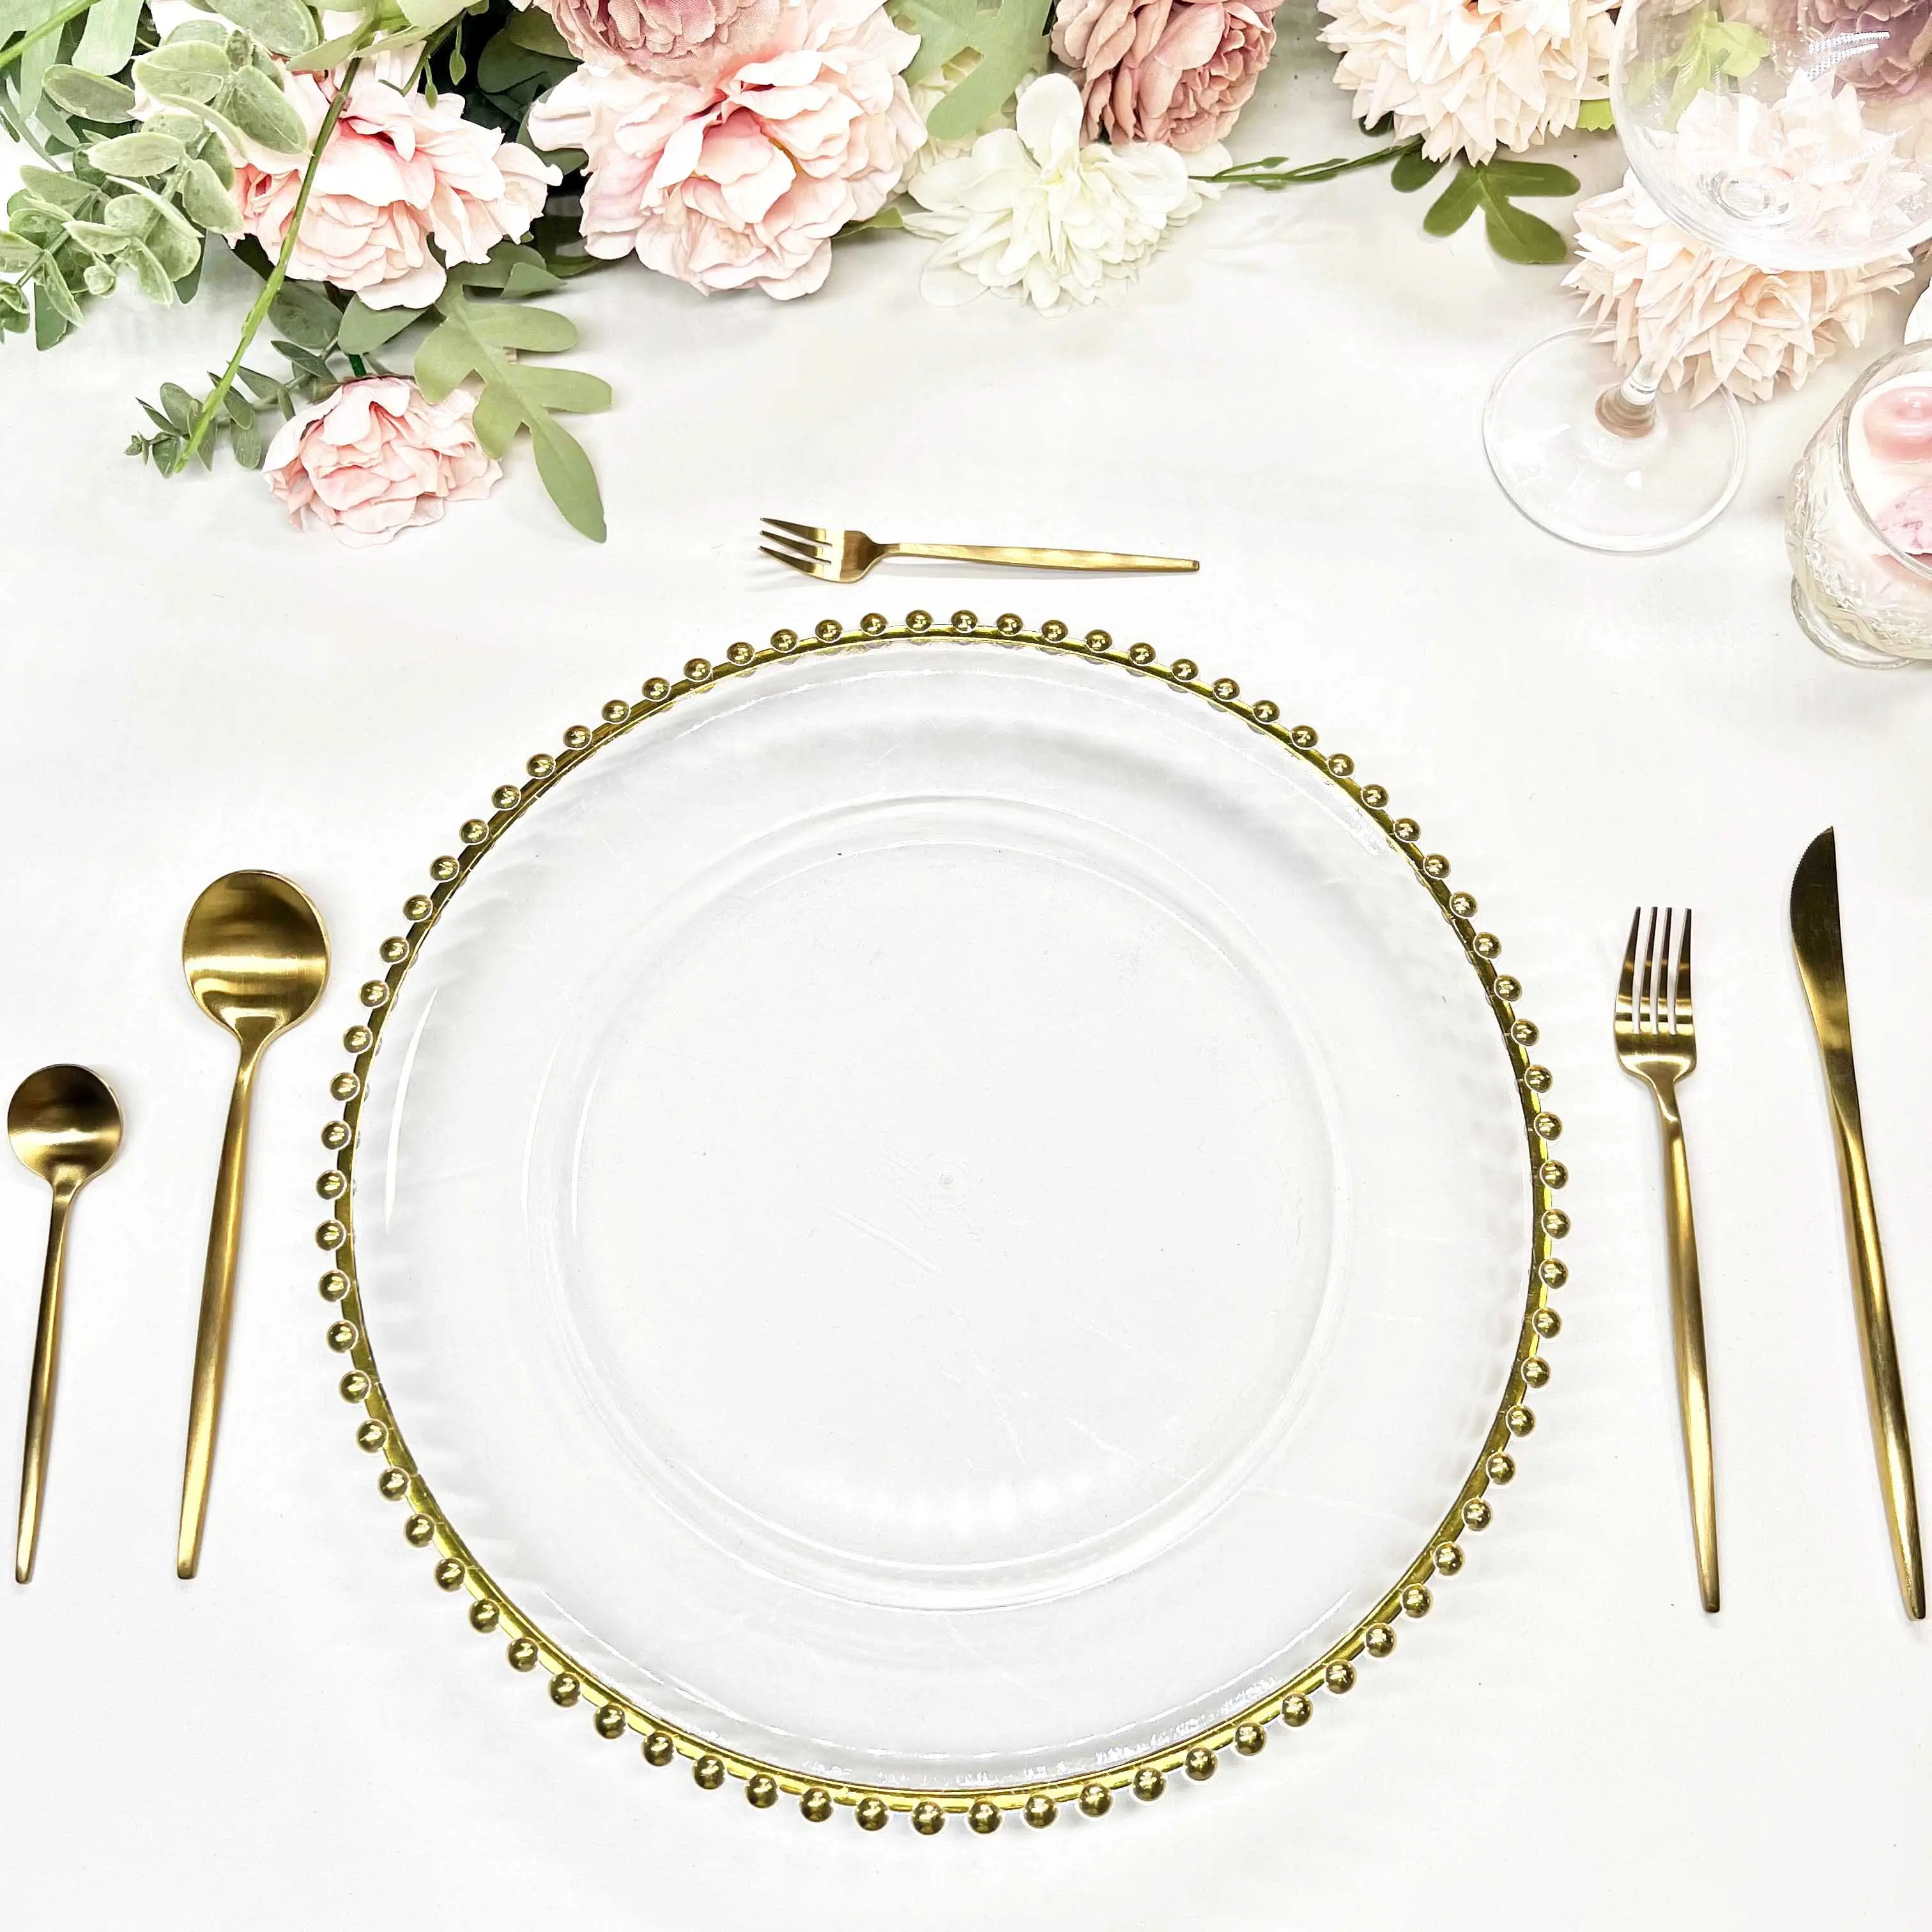 จานพลาสติกลูกปัดสีทอง13นิ้วสำหรับงานแต่งงานดีไซน์ทันสมัย